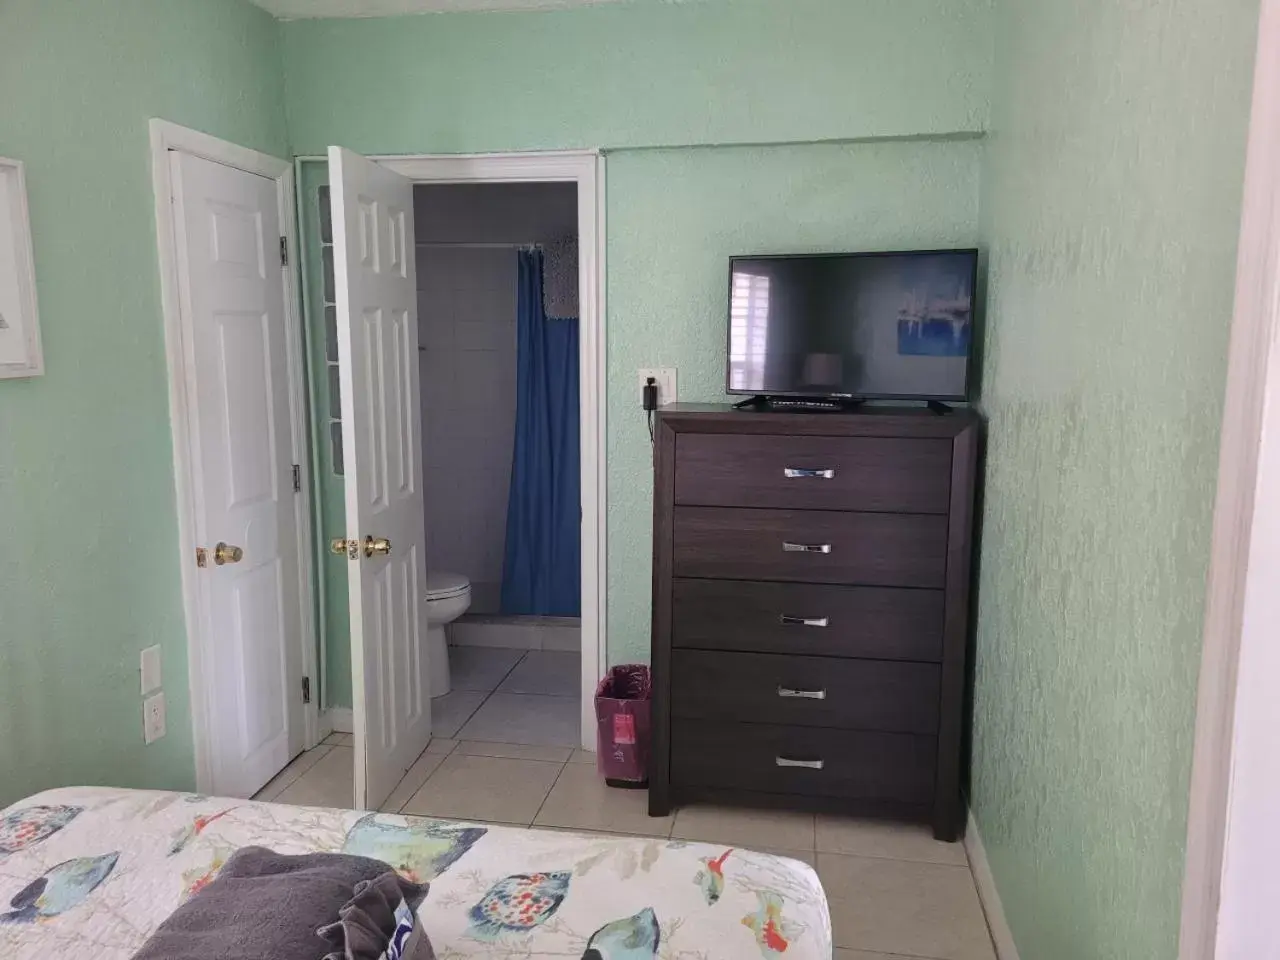 Bedroom, TV/Entertainment Center in Blind Pass Resort Motel